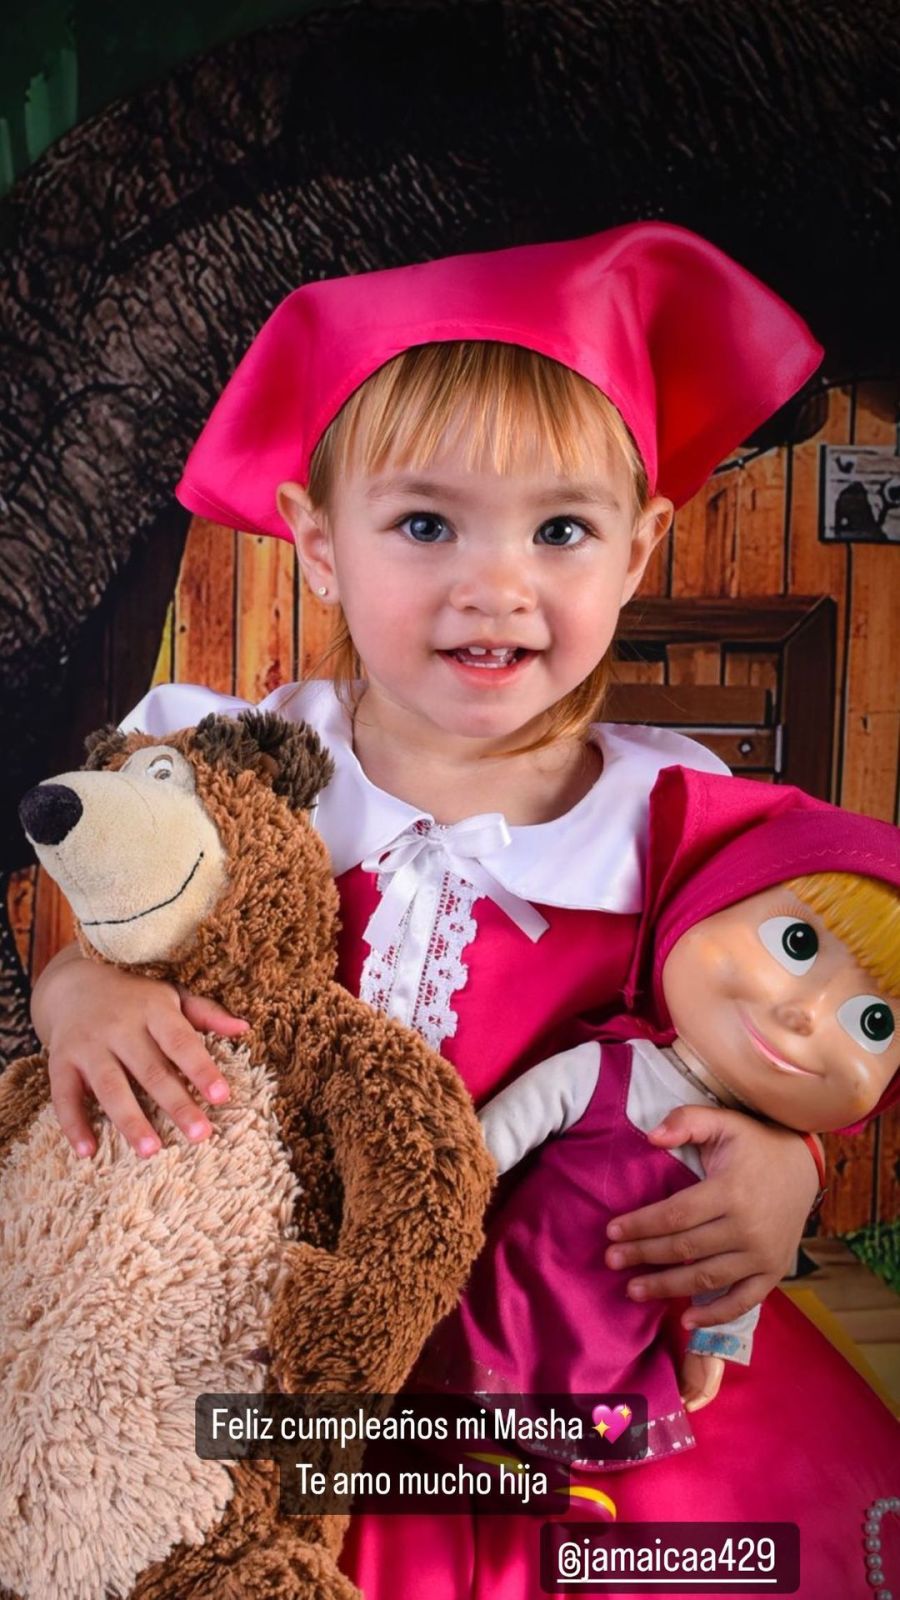 La hija de L-Gante y Tamara Báez cumple 2 años: el exclusivo regalo que recibió